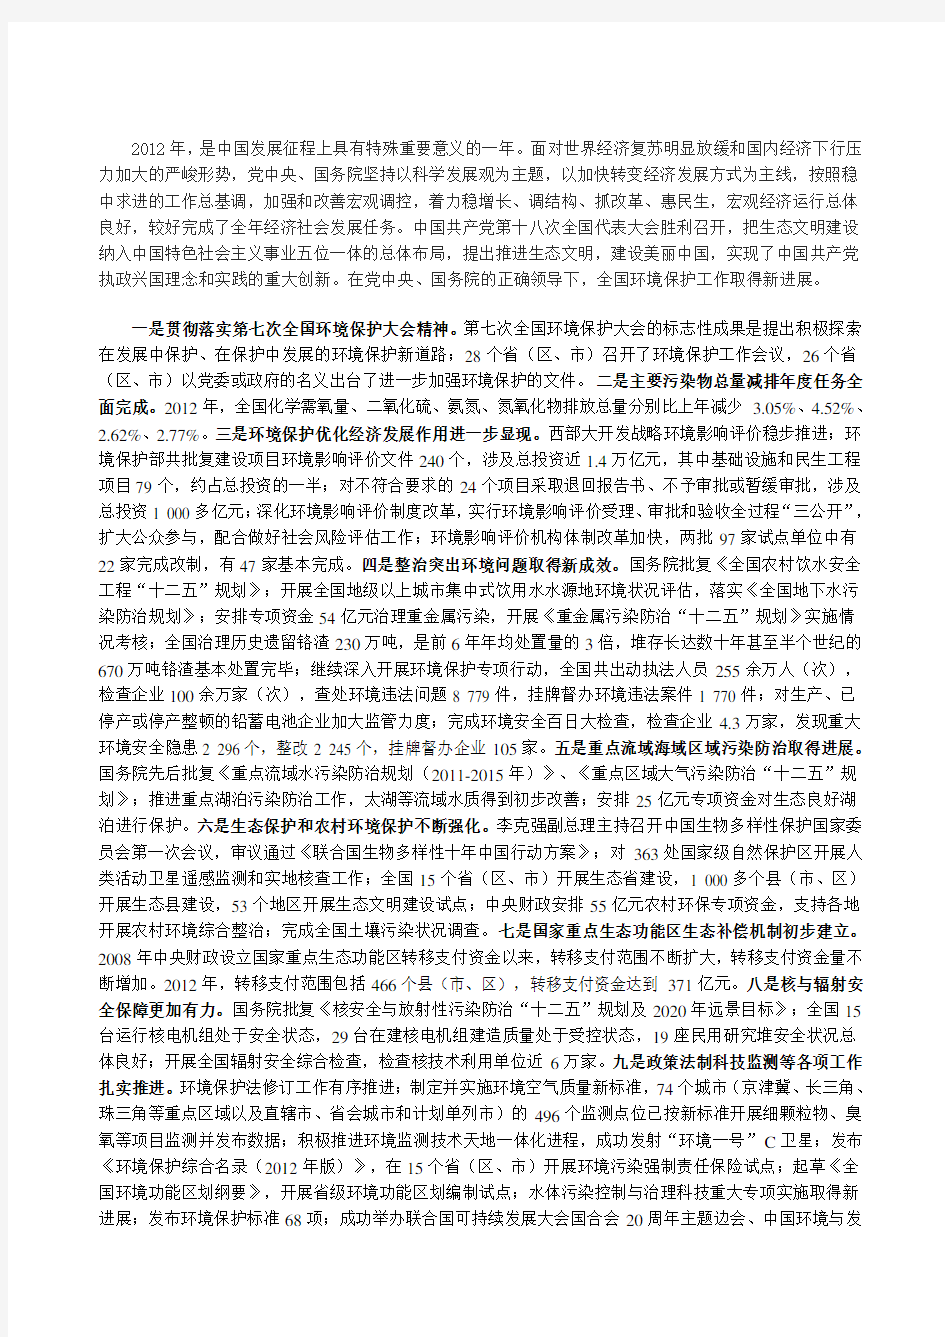 2012年中国环境状况公报